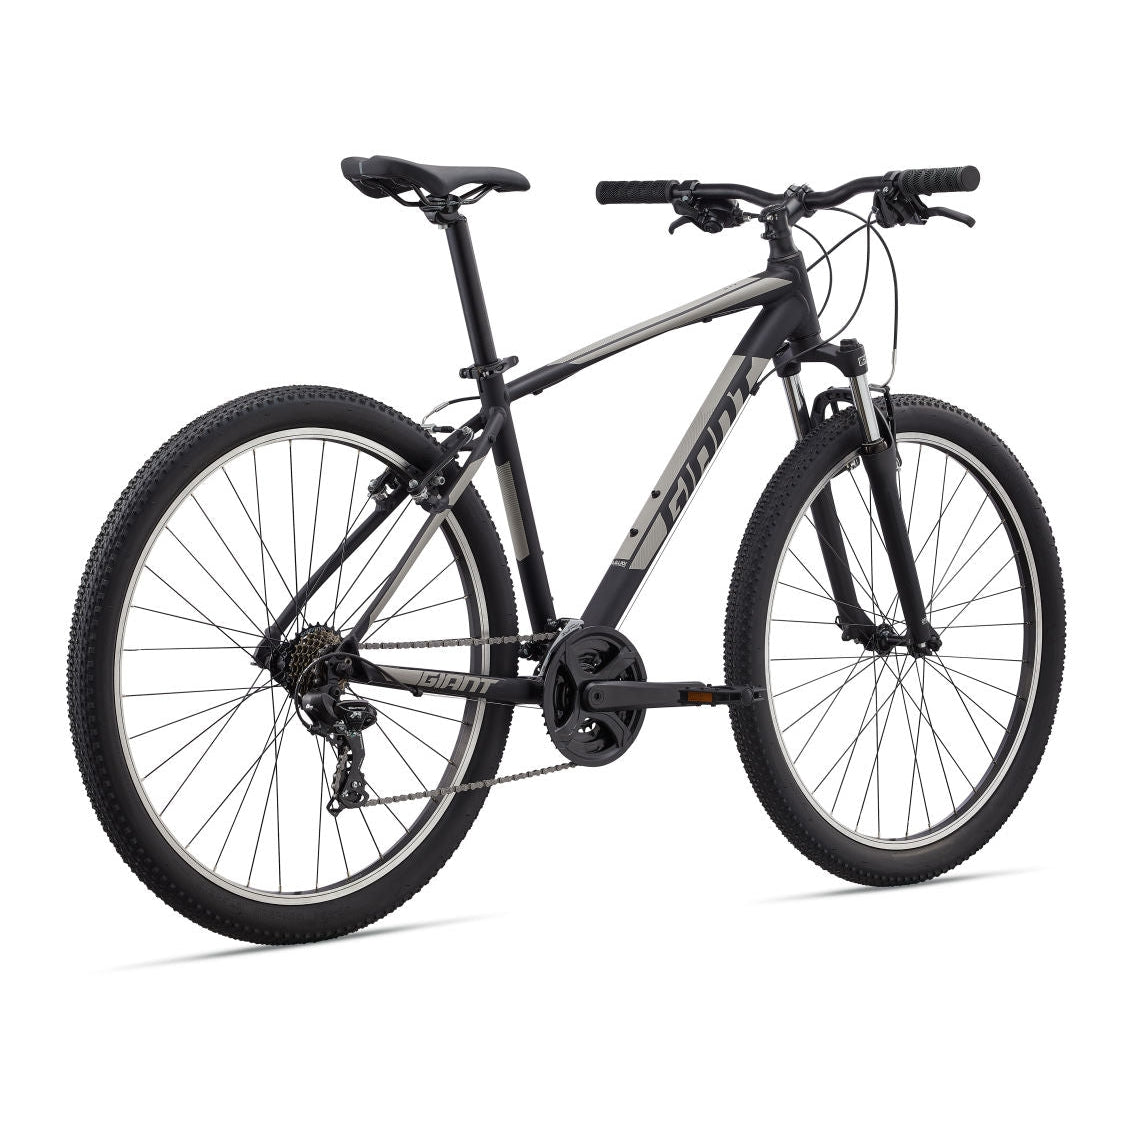 Giant ATX 27.5" Mountain Bike (2021) - Bikes - Bicycle Warehouse